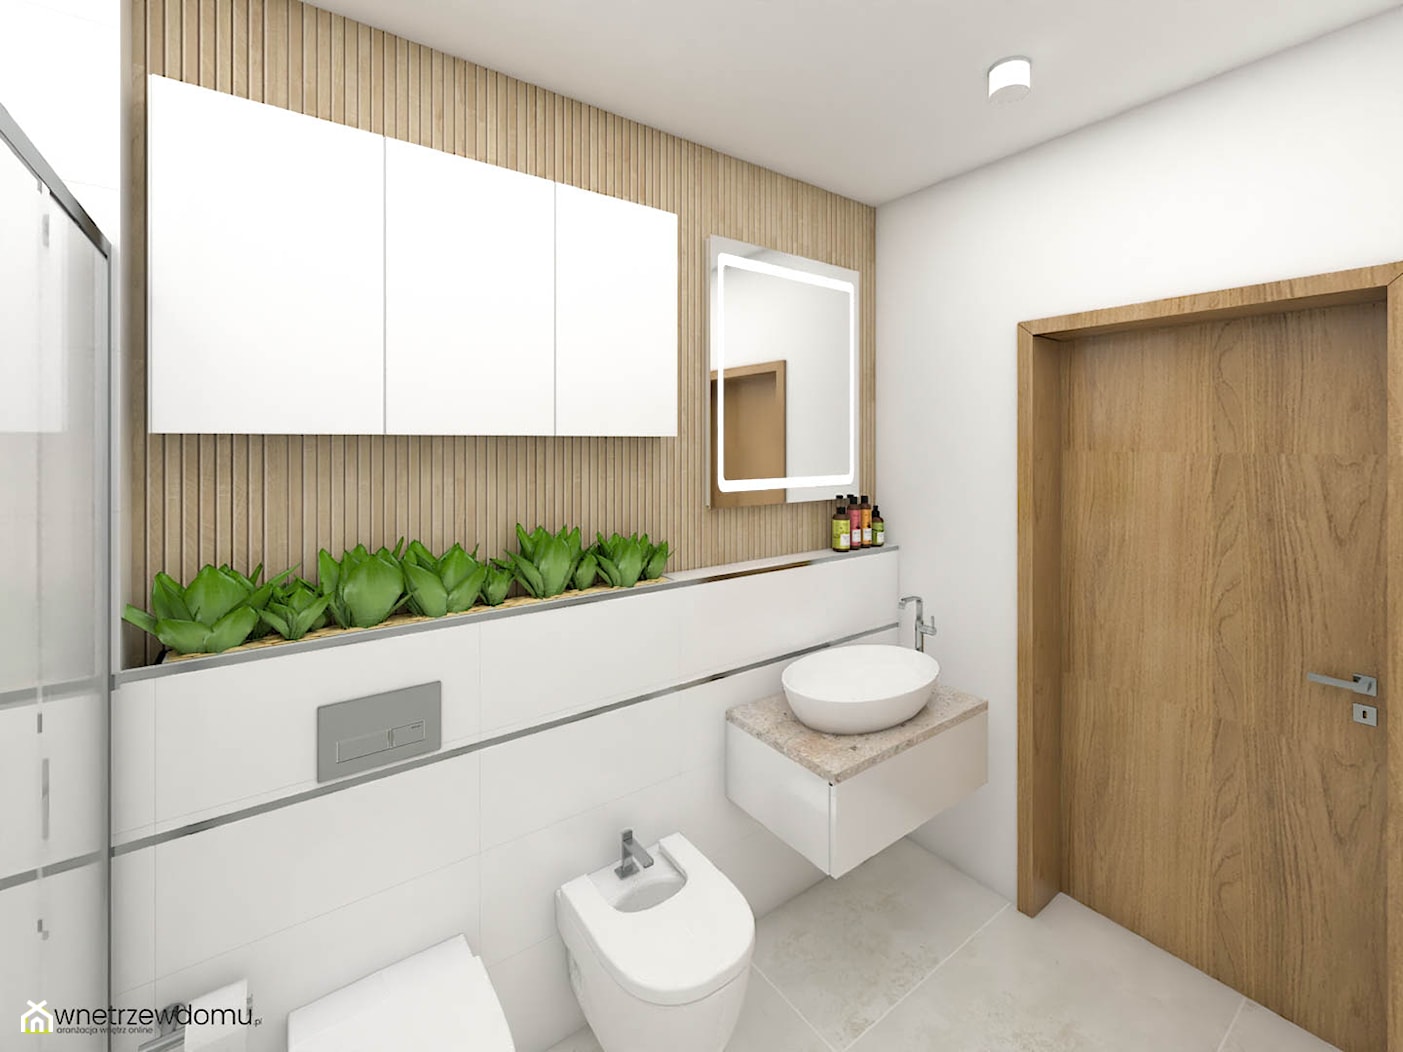 Strukturalne płyki w jasnej łazience - zdjęcie od wnetrzewdomu - Homebook